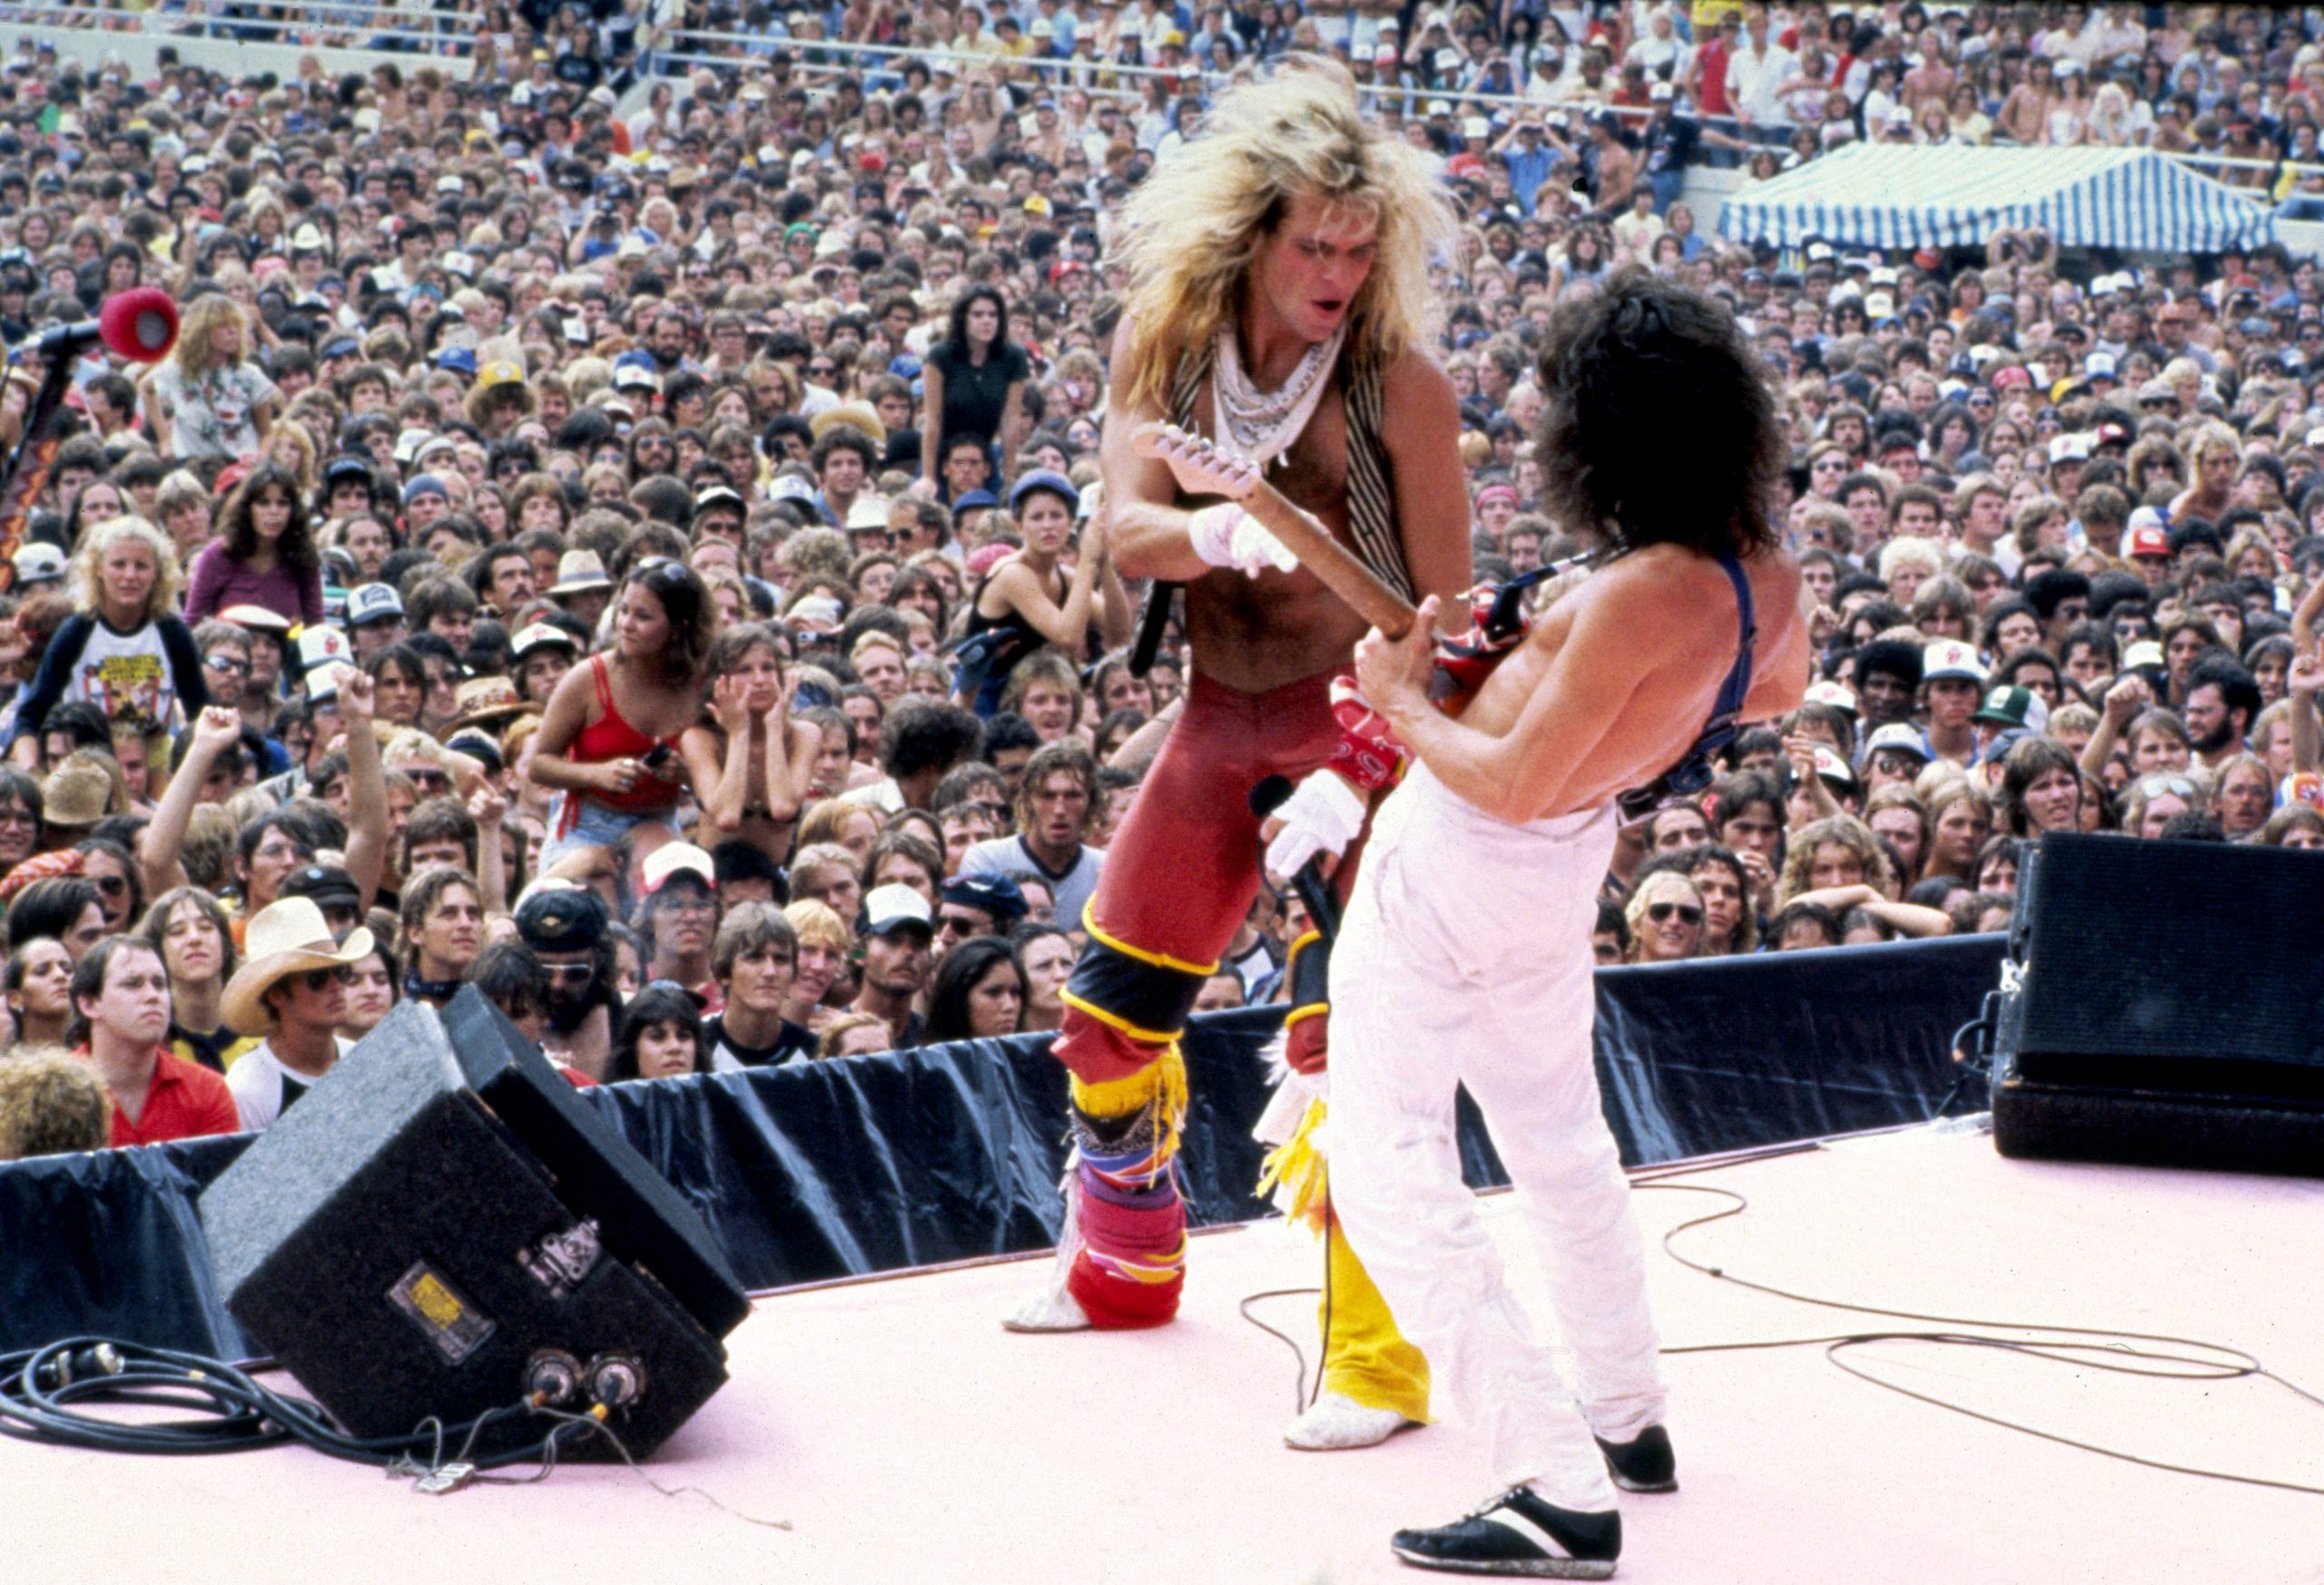 La tenebrosa historia de "Jump", la canción más famosa de Van Halen